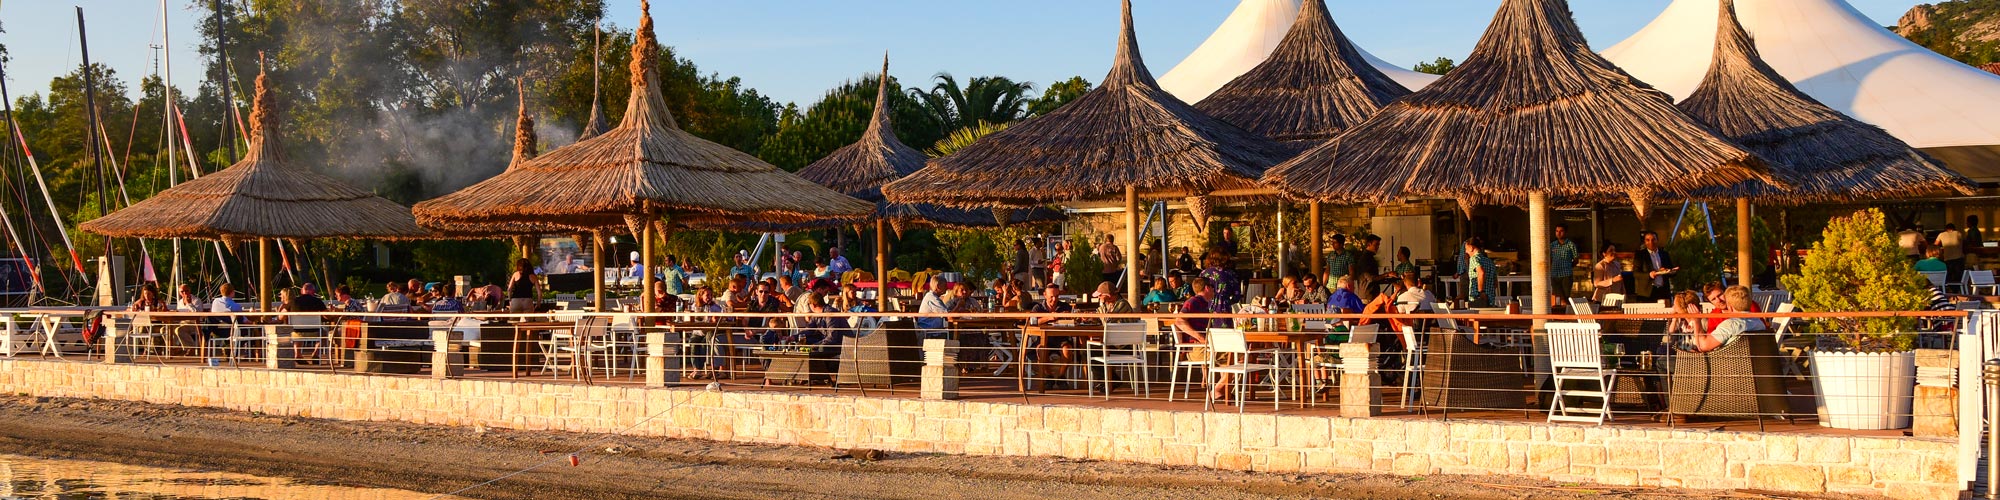 Phokaia beach bar